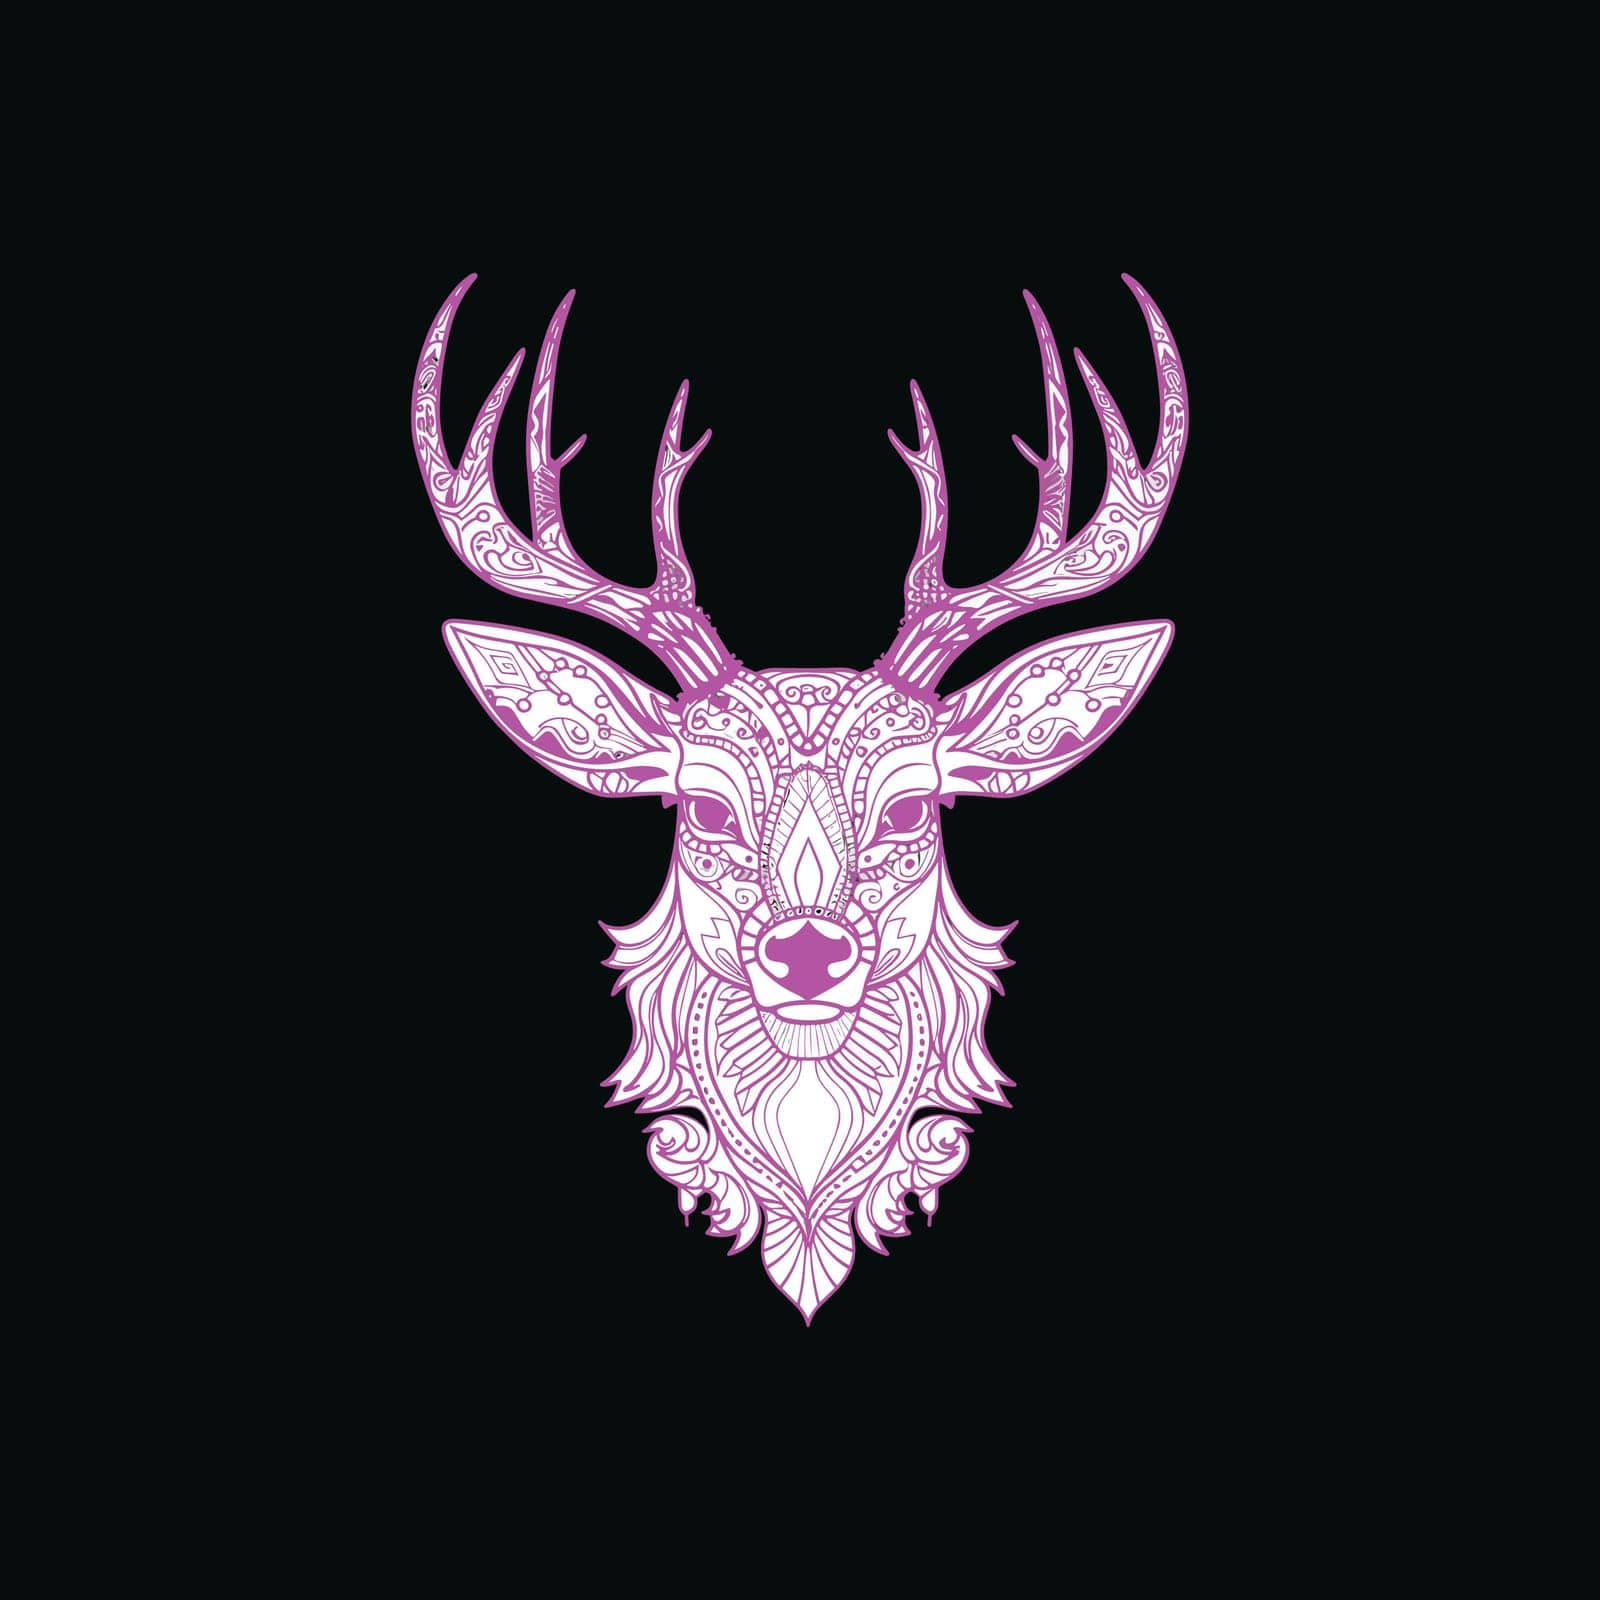 Deer head colorful illustration on black background